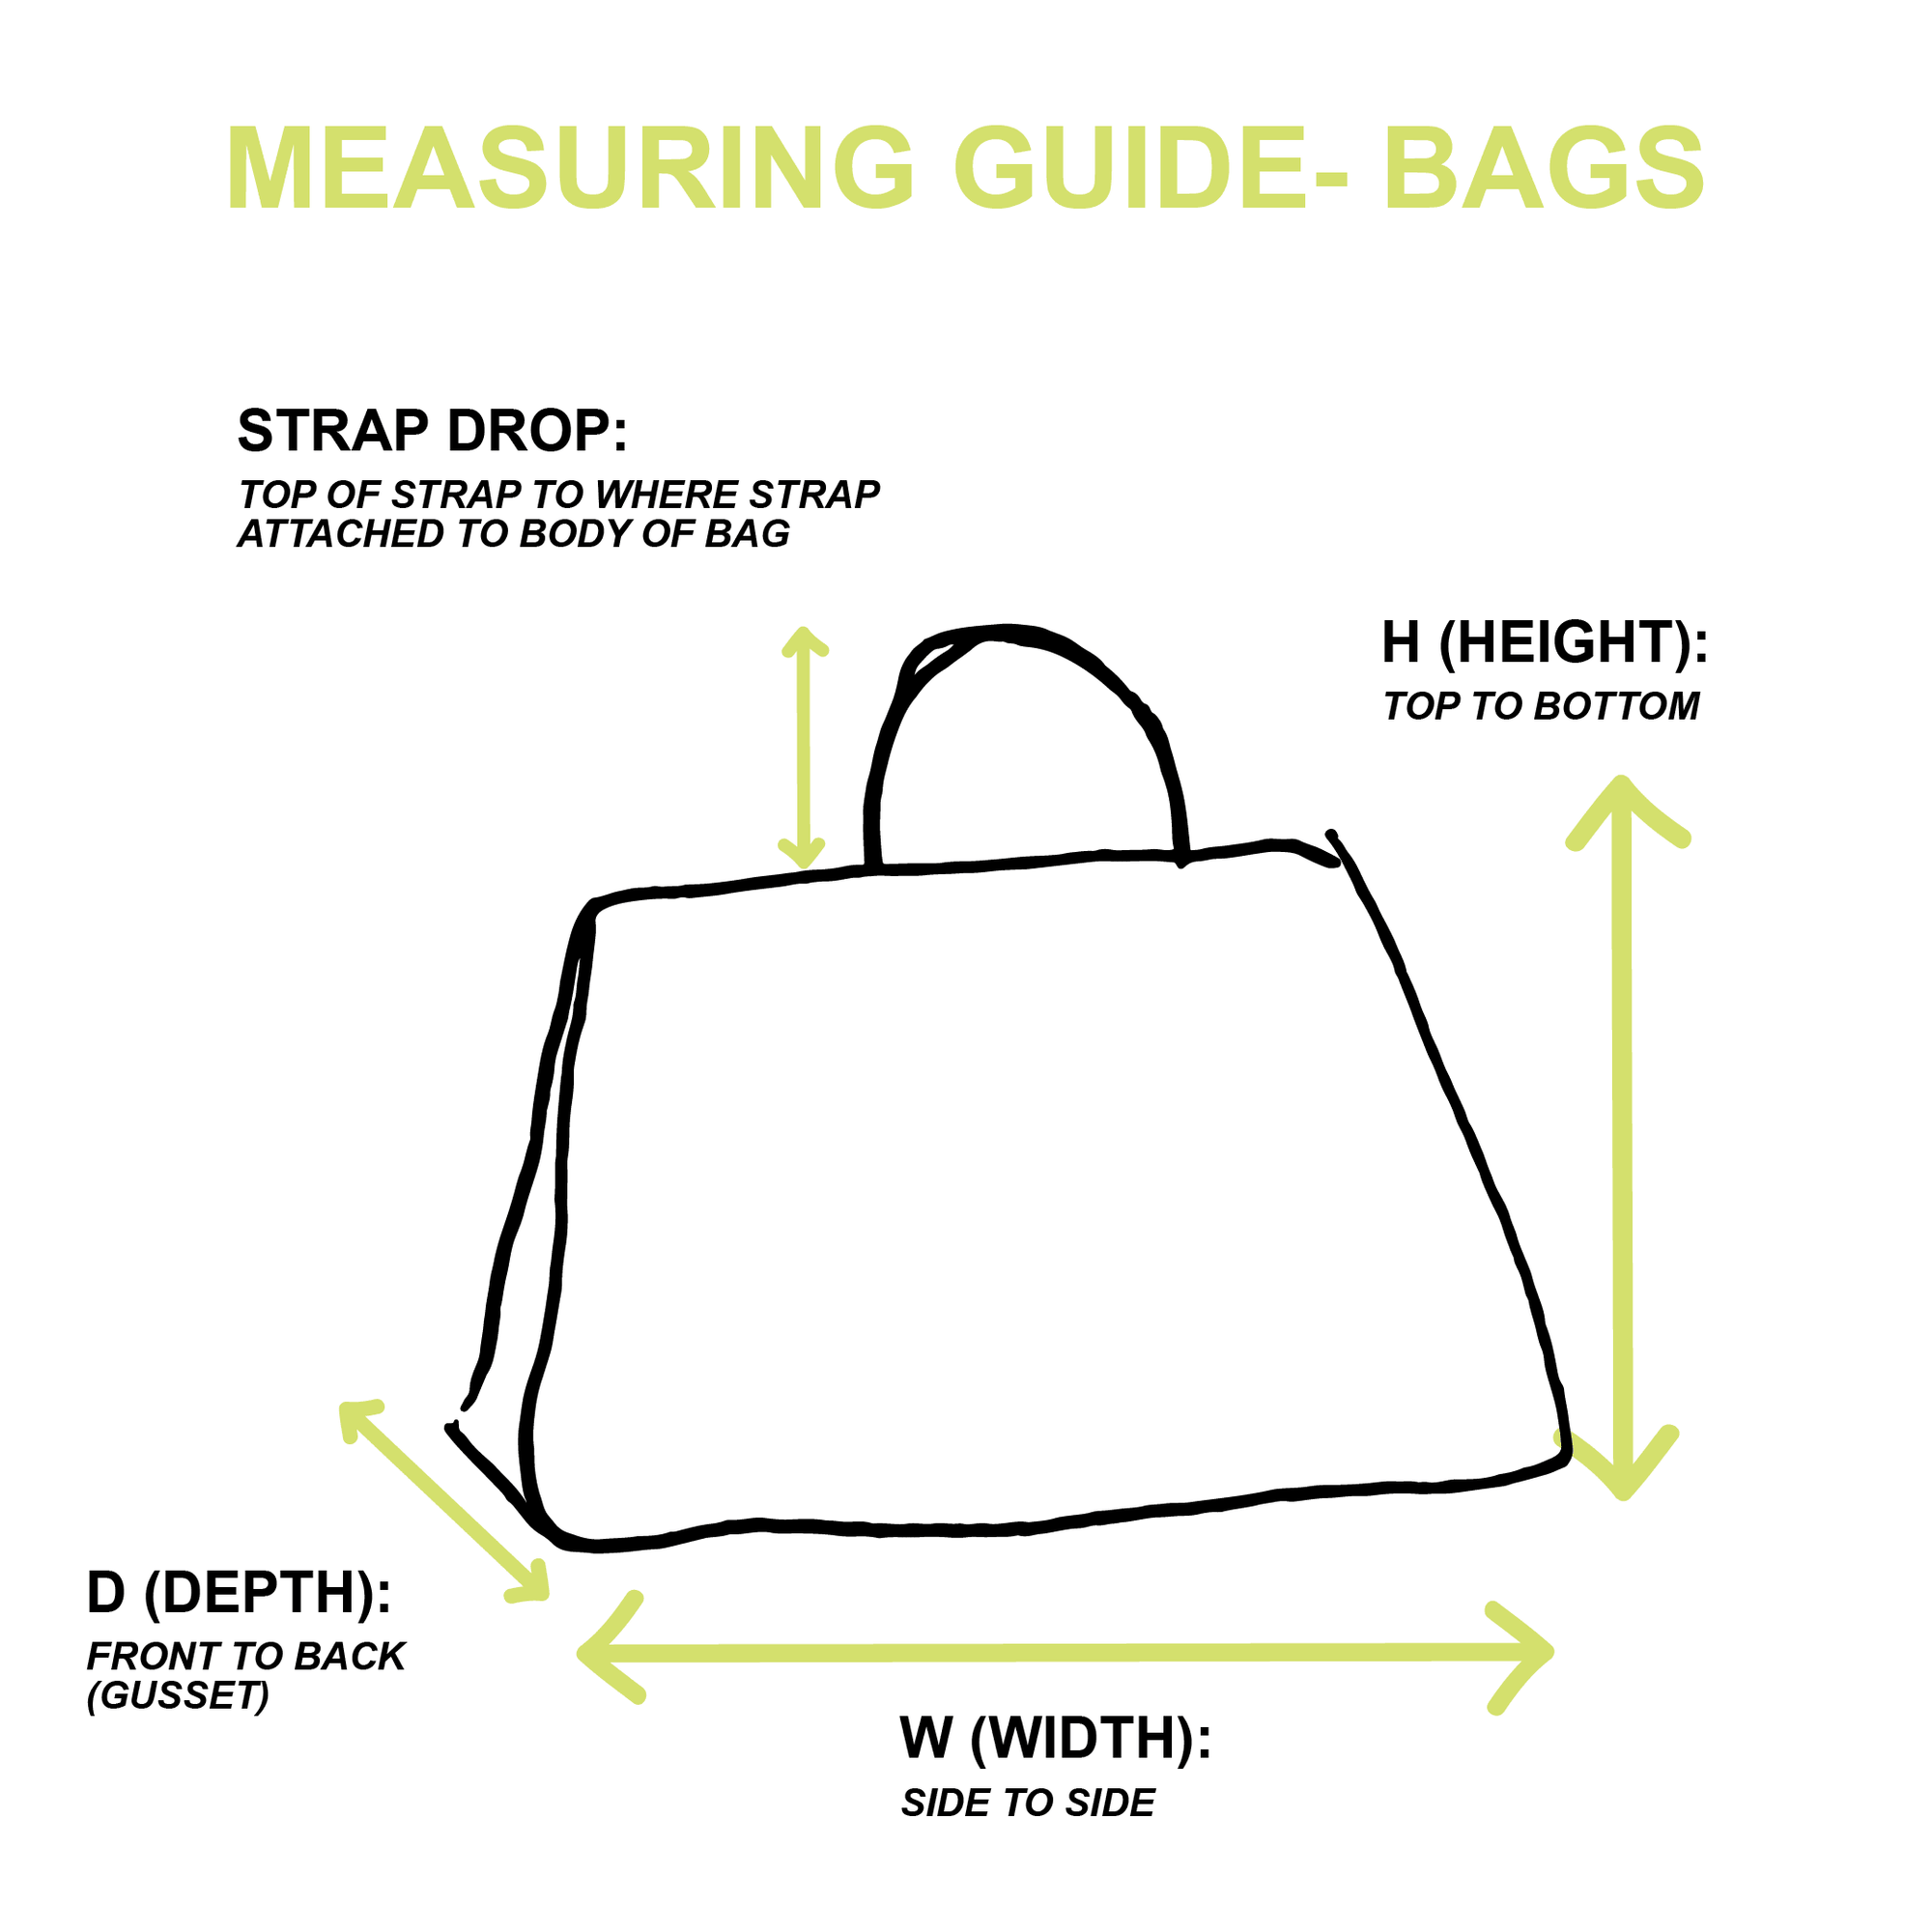 Miu Miu Tan Leather Shoulder Bag - Handbags